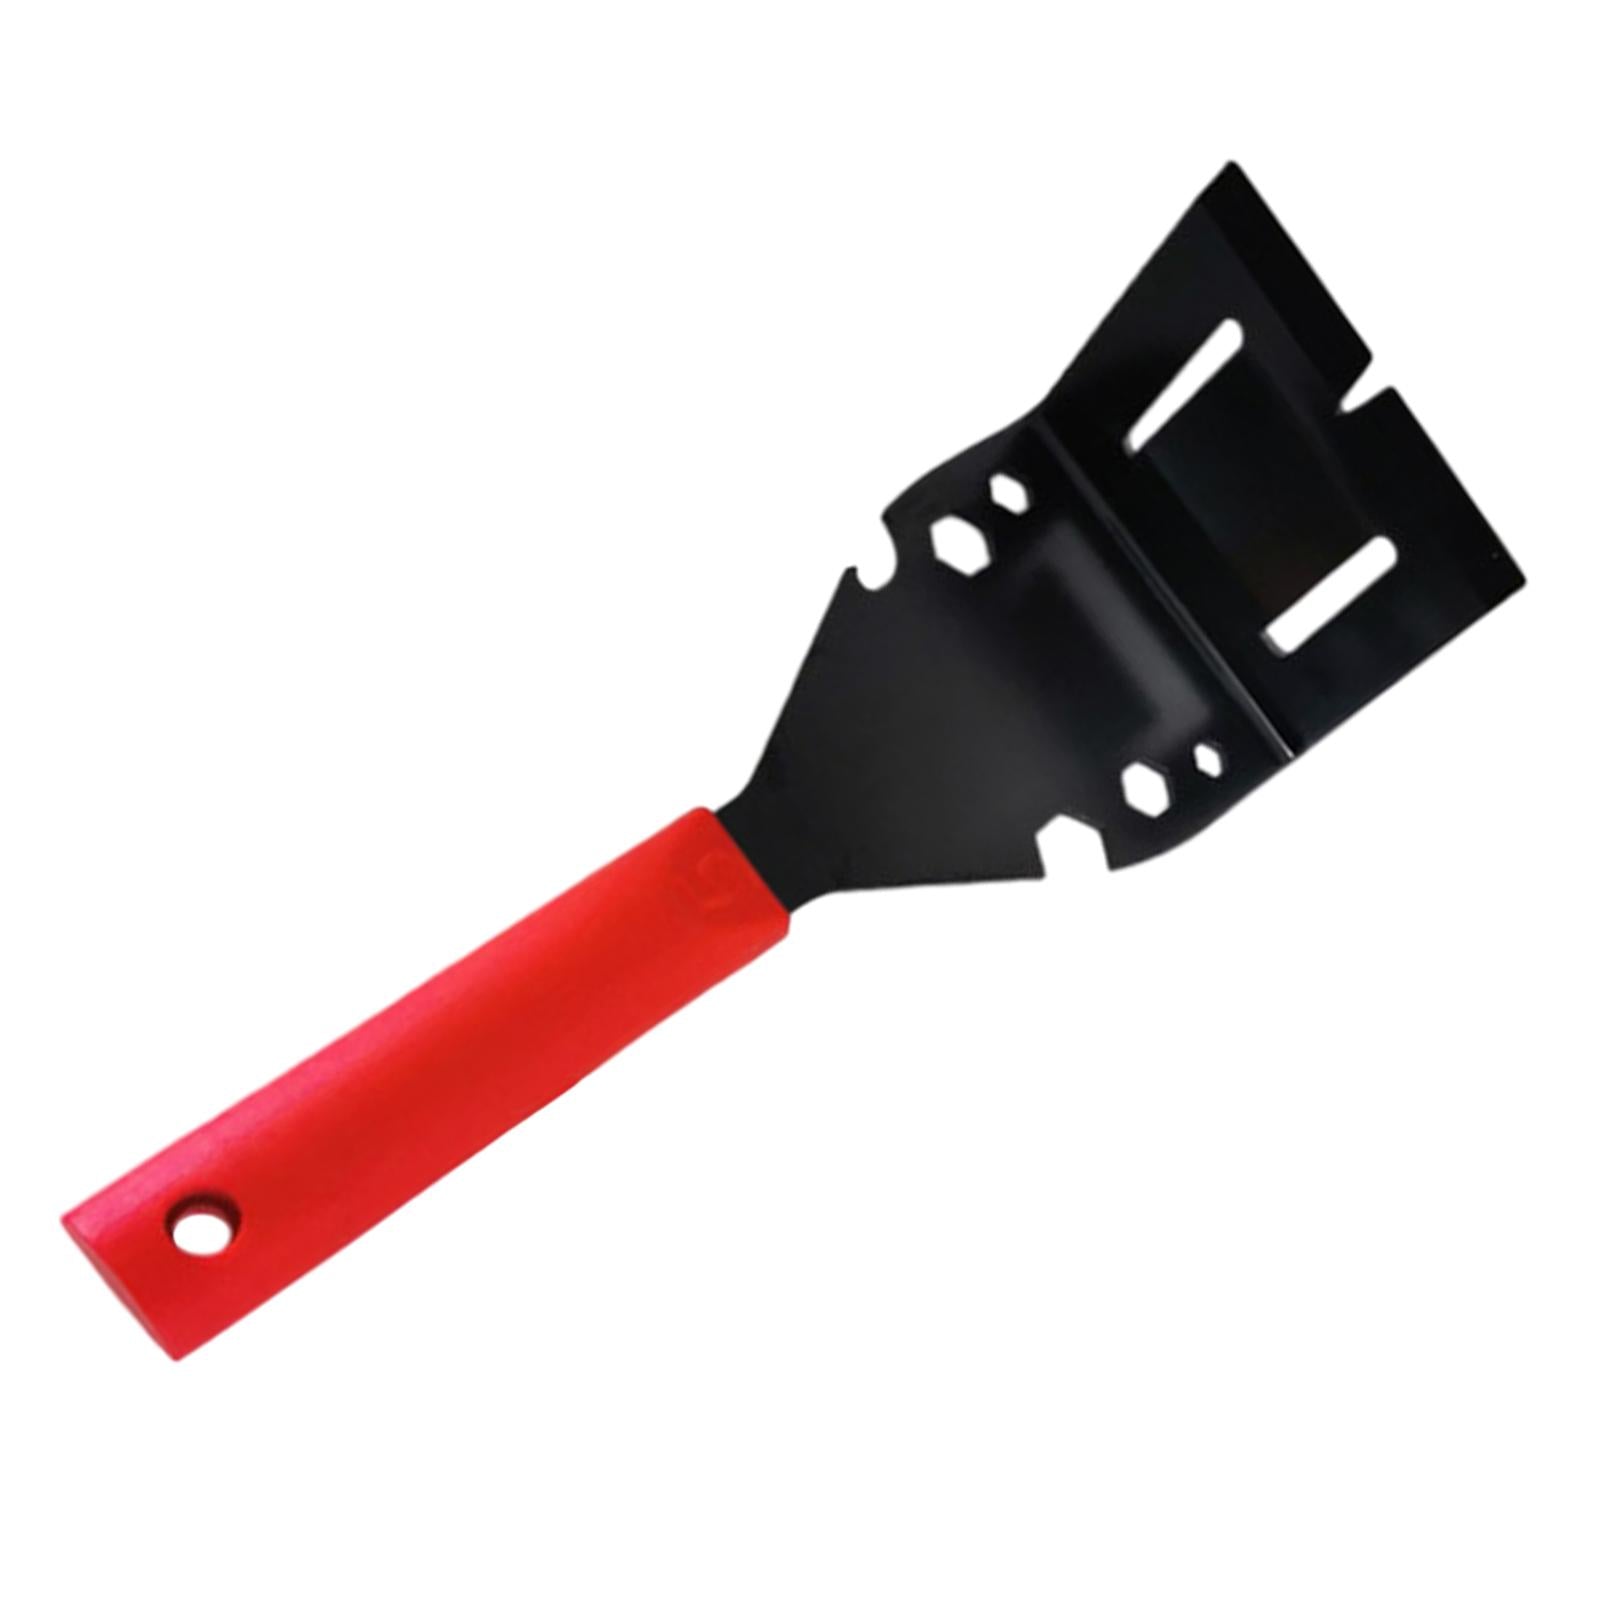 Trim Puller for Baseboard Moulding Puller Tile Removal Tool  Red